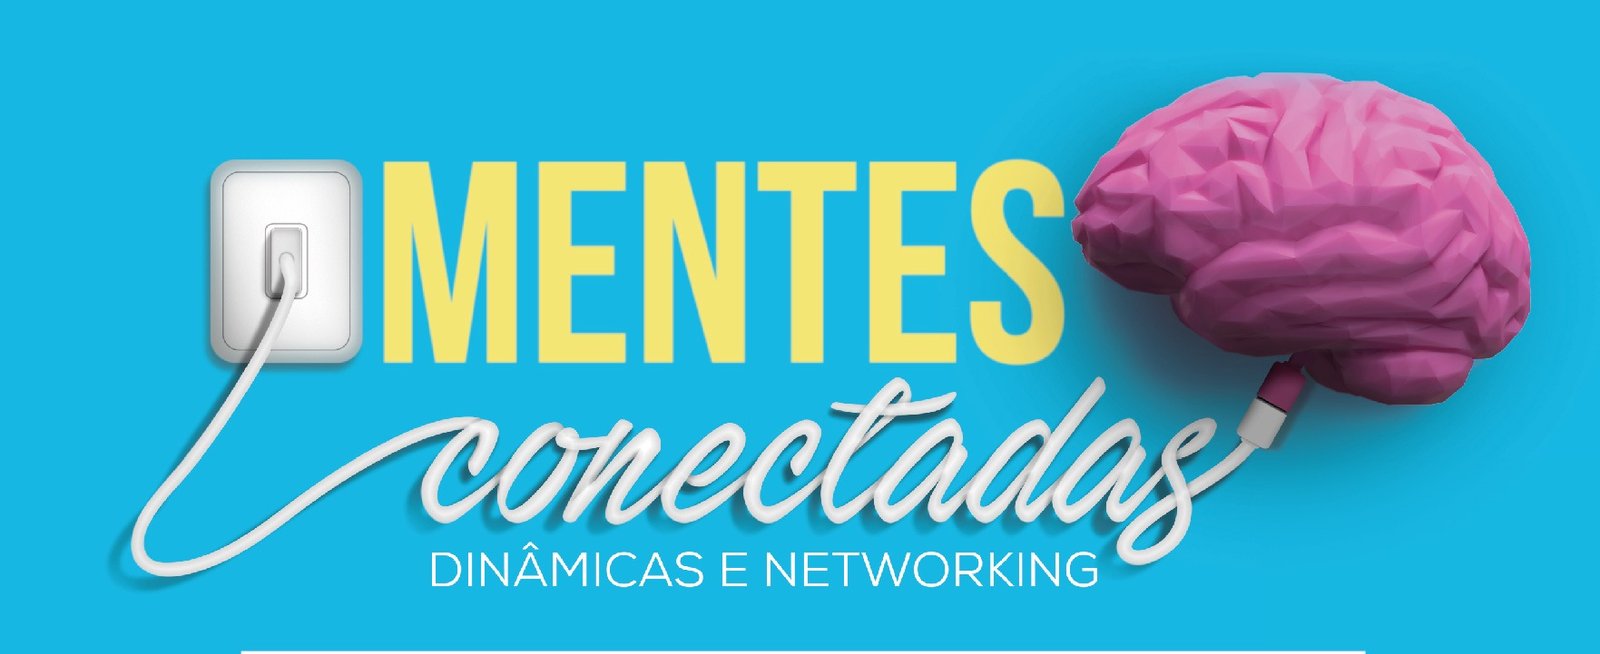 Mentes Conectadas: Comitê de Mulheres Empreendedoras da ACI promove, na próxima terça-feira, evento com dinâmicas e networking